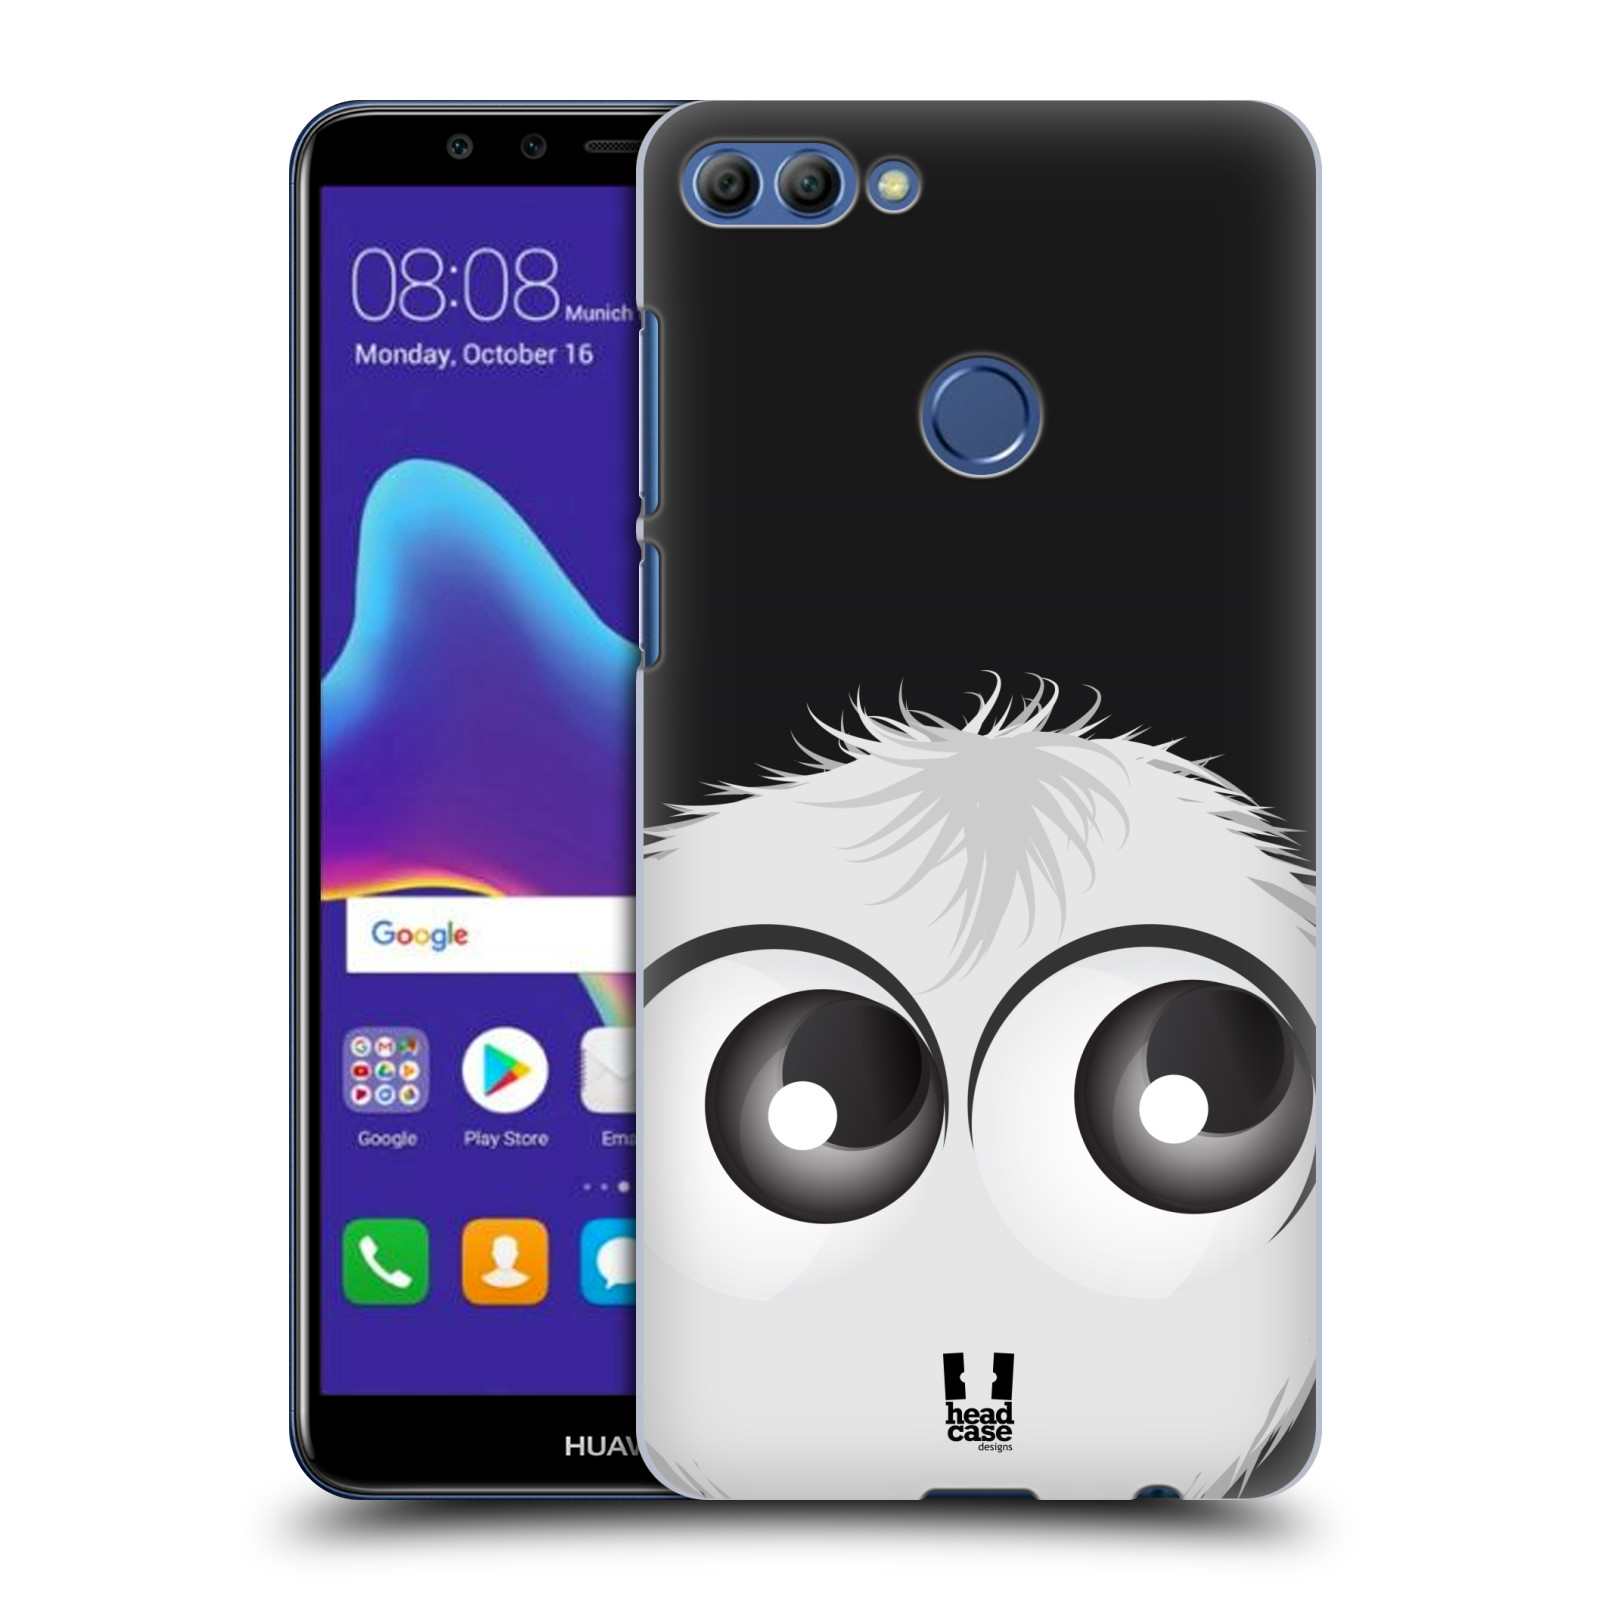 HEAD CASE plastový obal na mobil Huawei Y9 2018 vzor Barevný chlupatý smajlík BÍLÁ černé pozadí